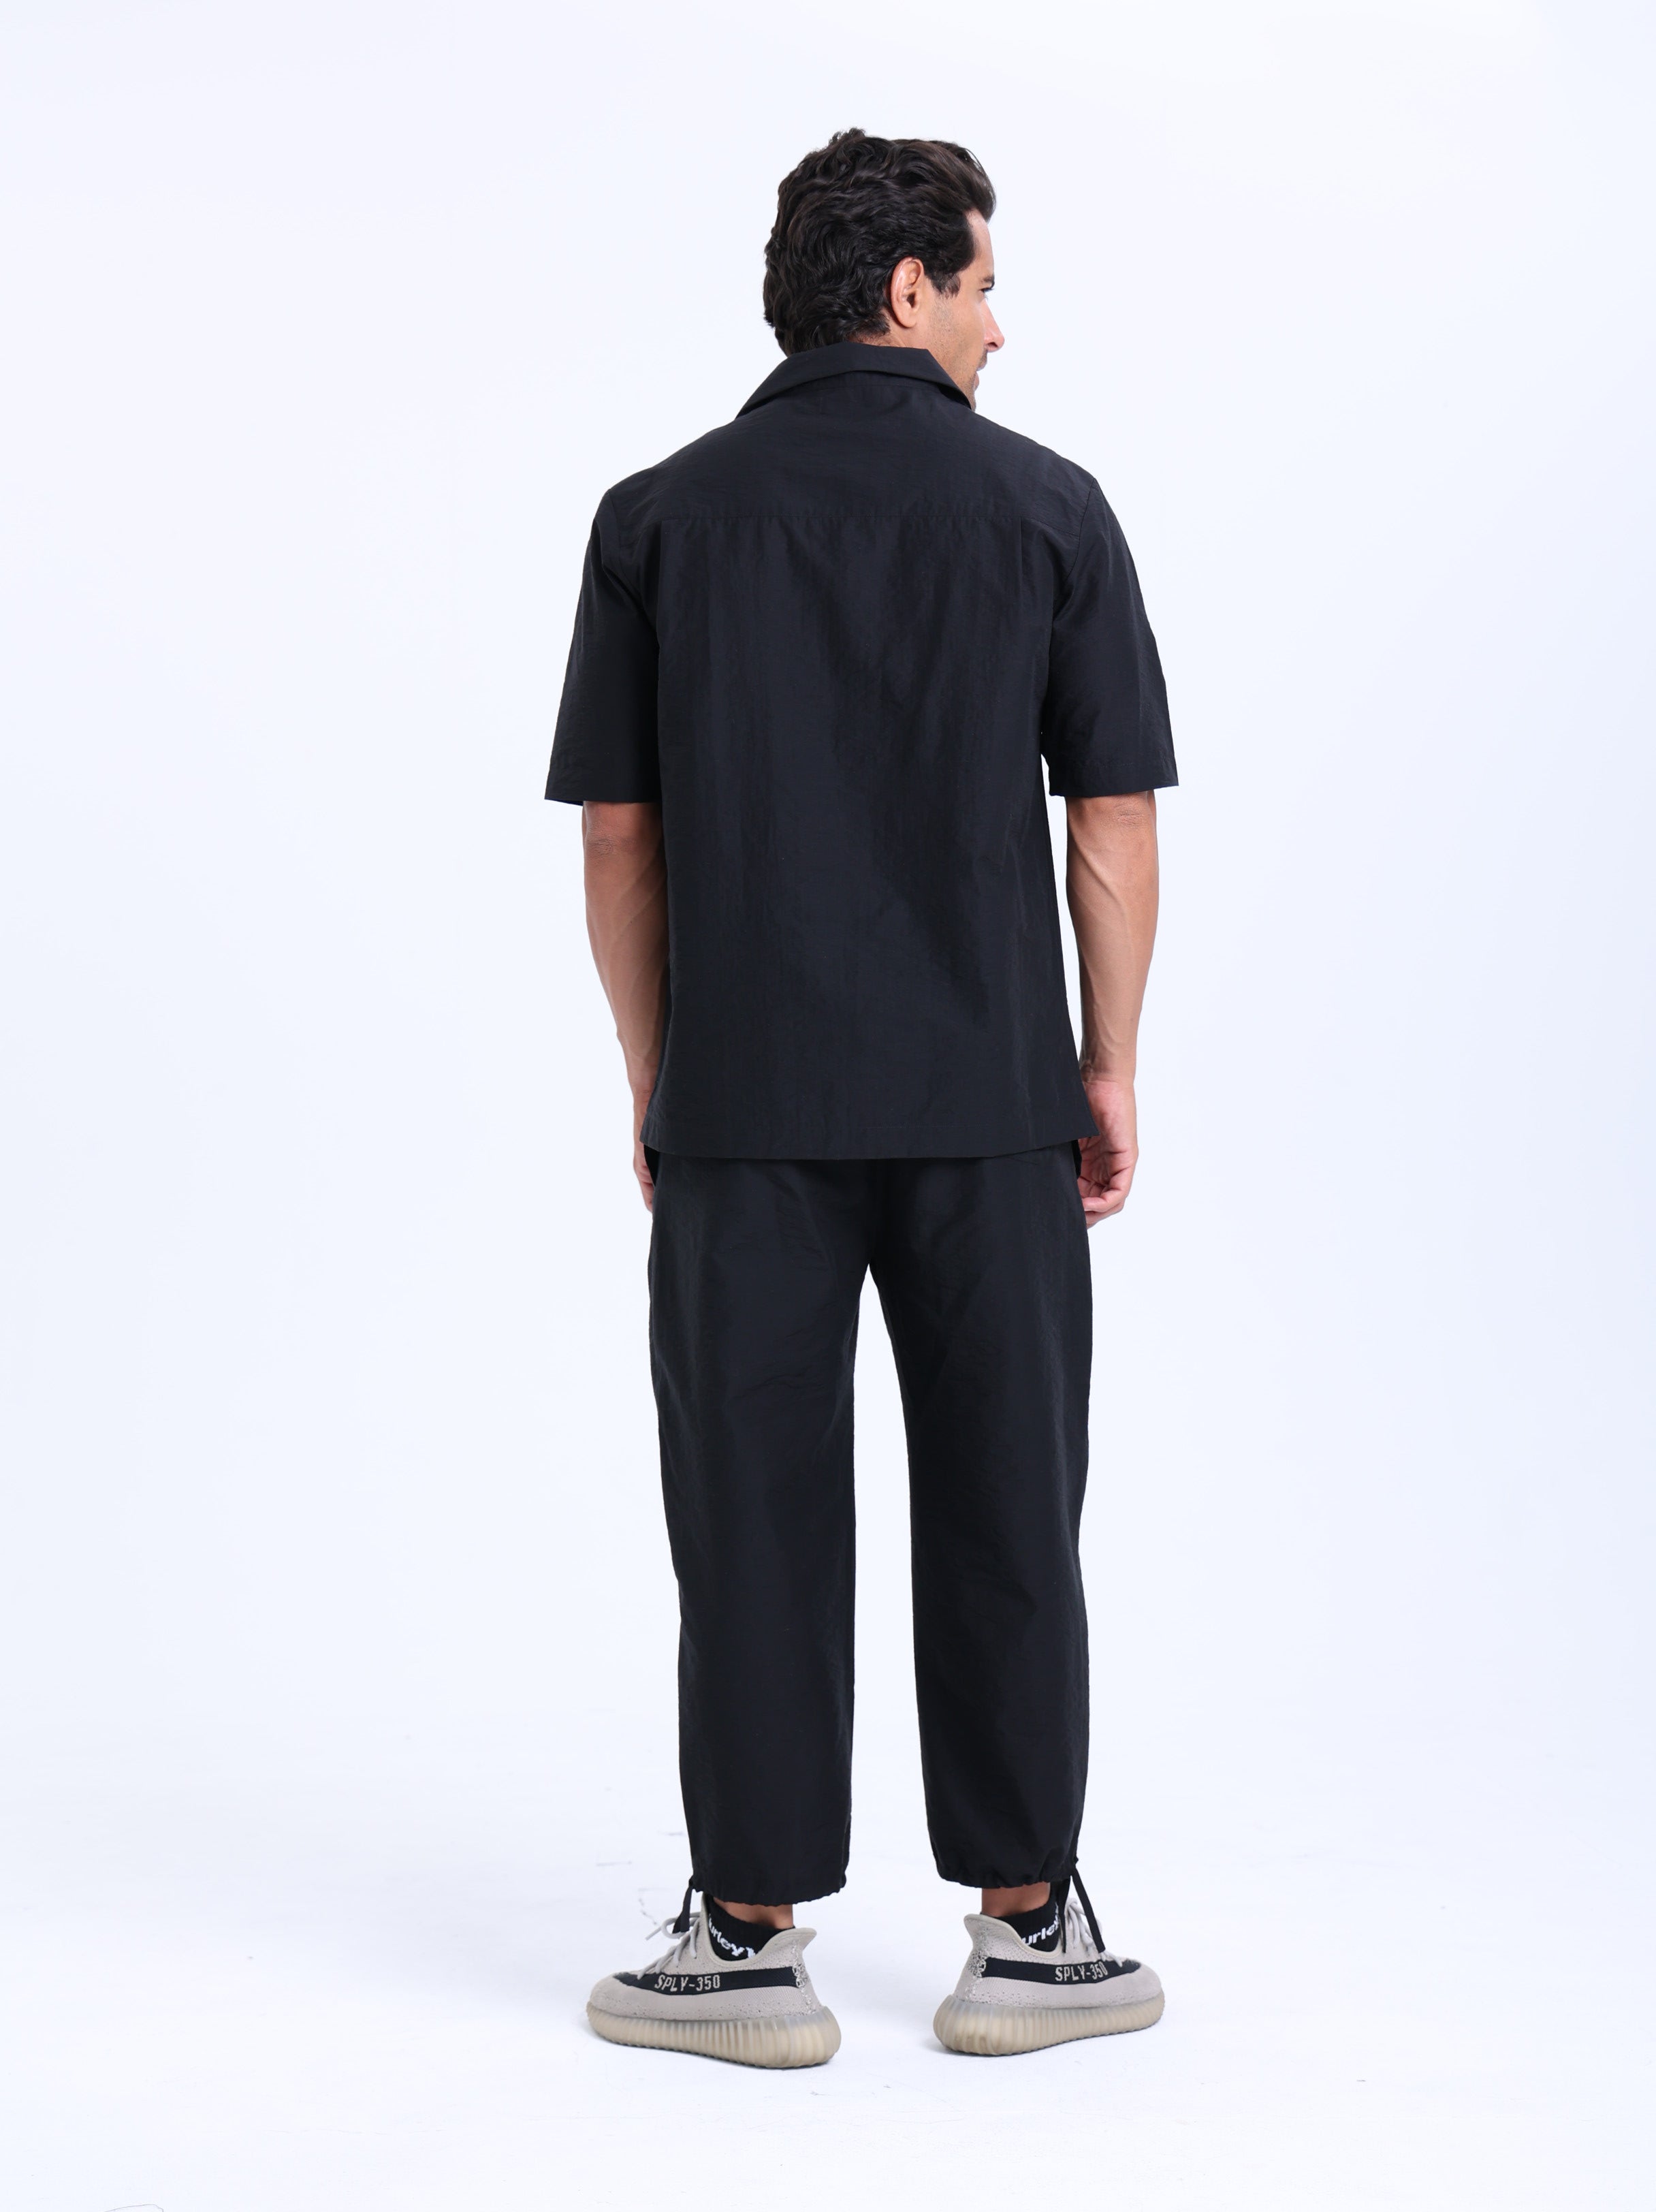 Текстурированная рубашка черного цвета